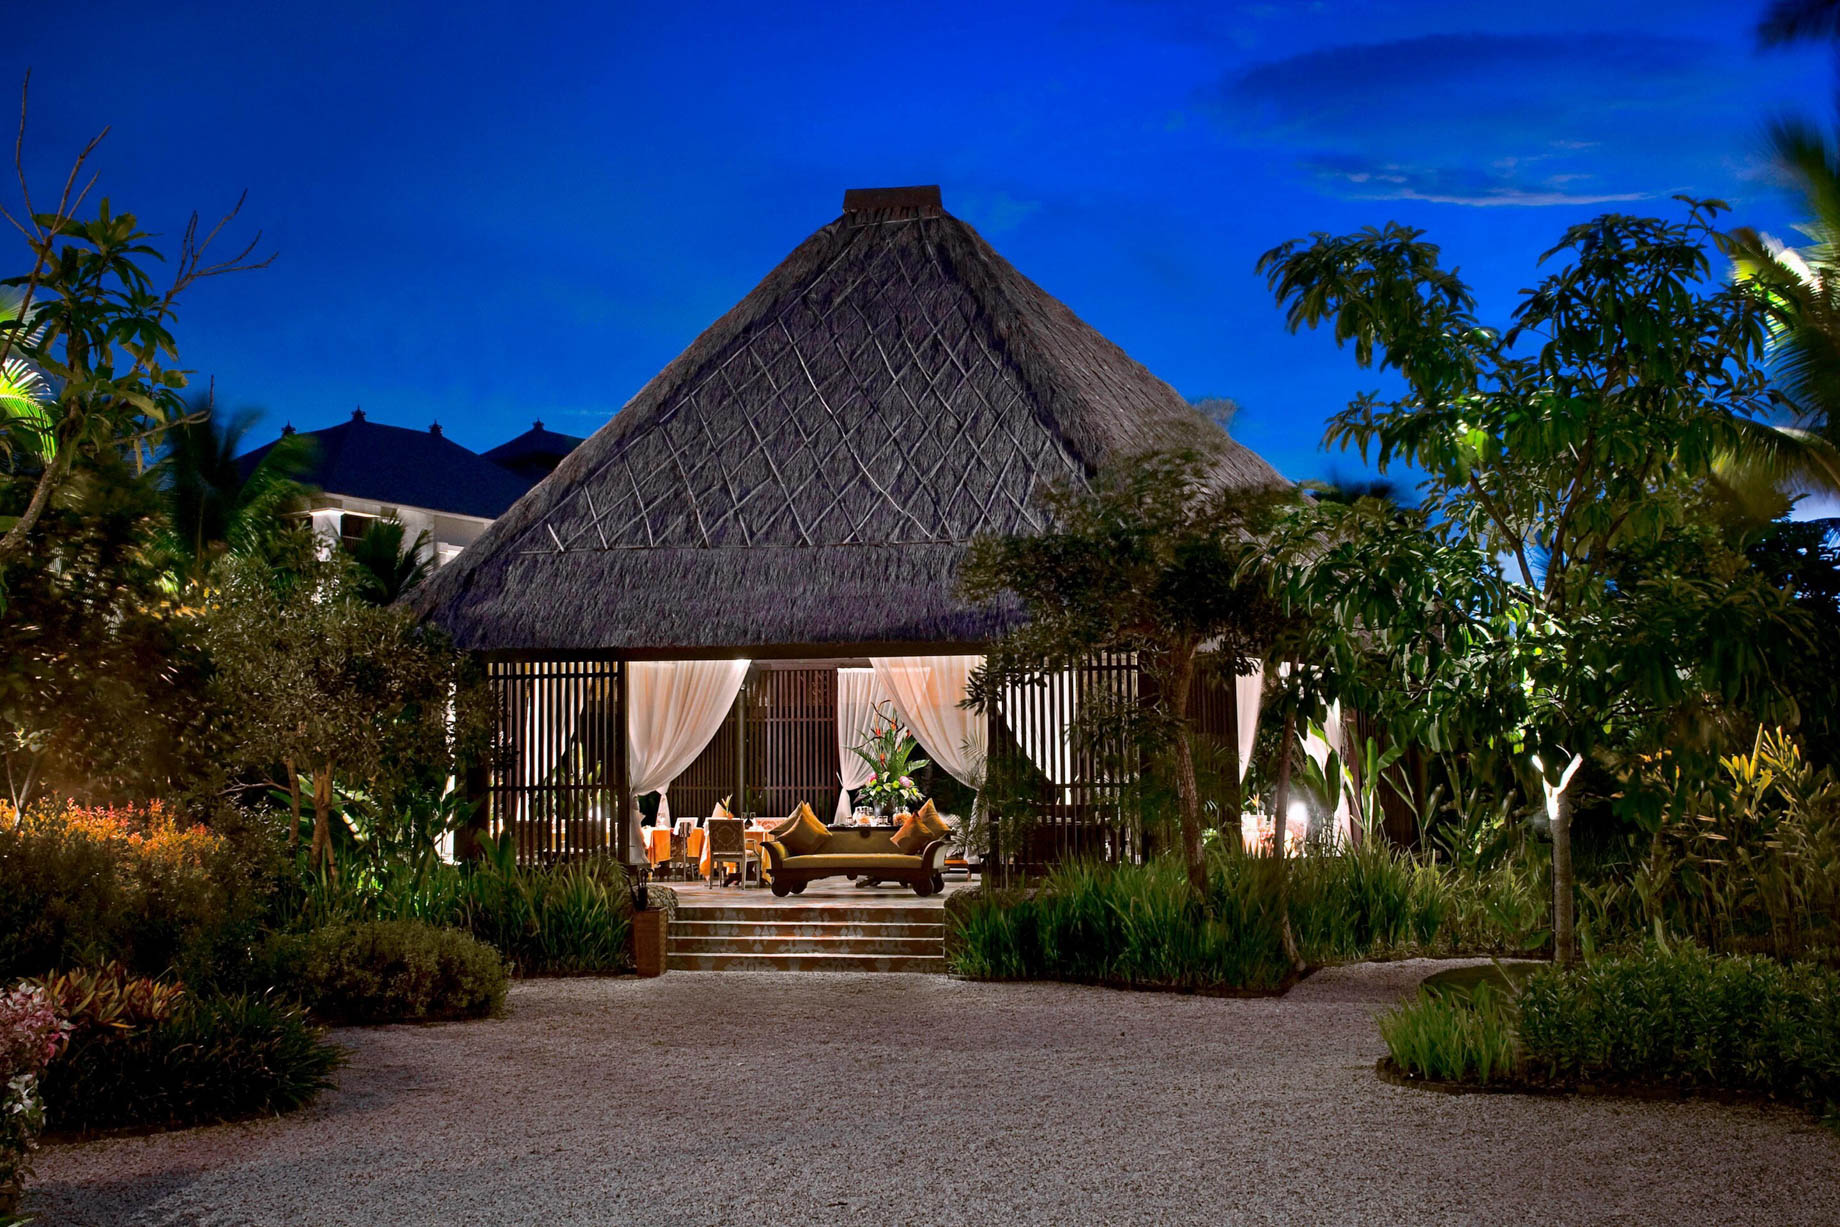 The St. Regis Bali Resort - Bali, Indonesia - Dulang Restaurant